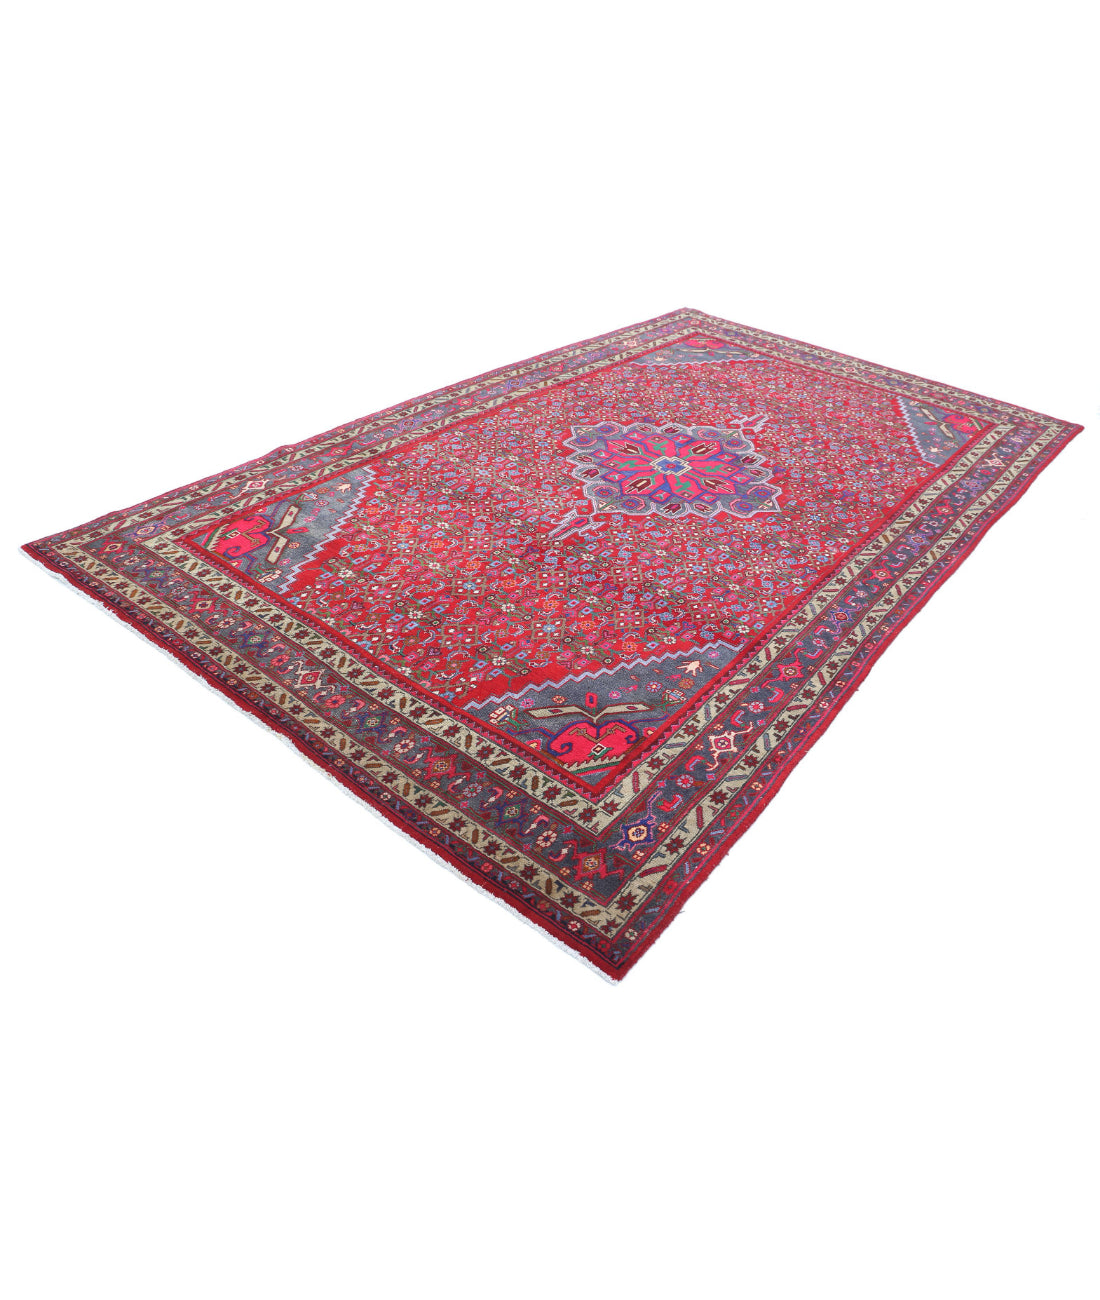 Hand Knotted Persian Bijar Wool Rug - 6'9'' x 11'6'' 6'9'' x 11'6'' (203 X 345) / Red / Blue